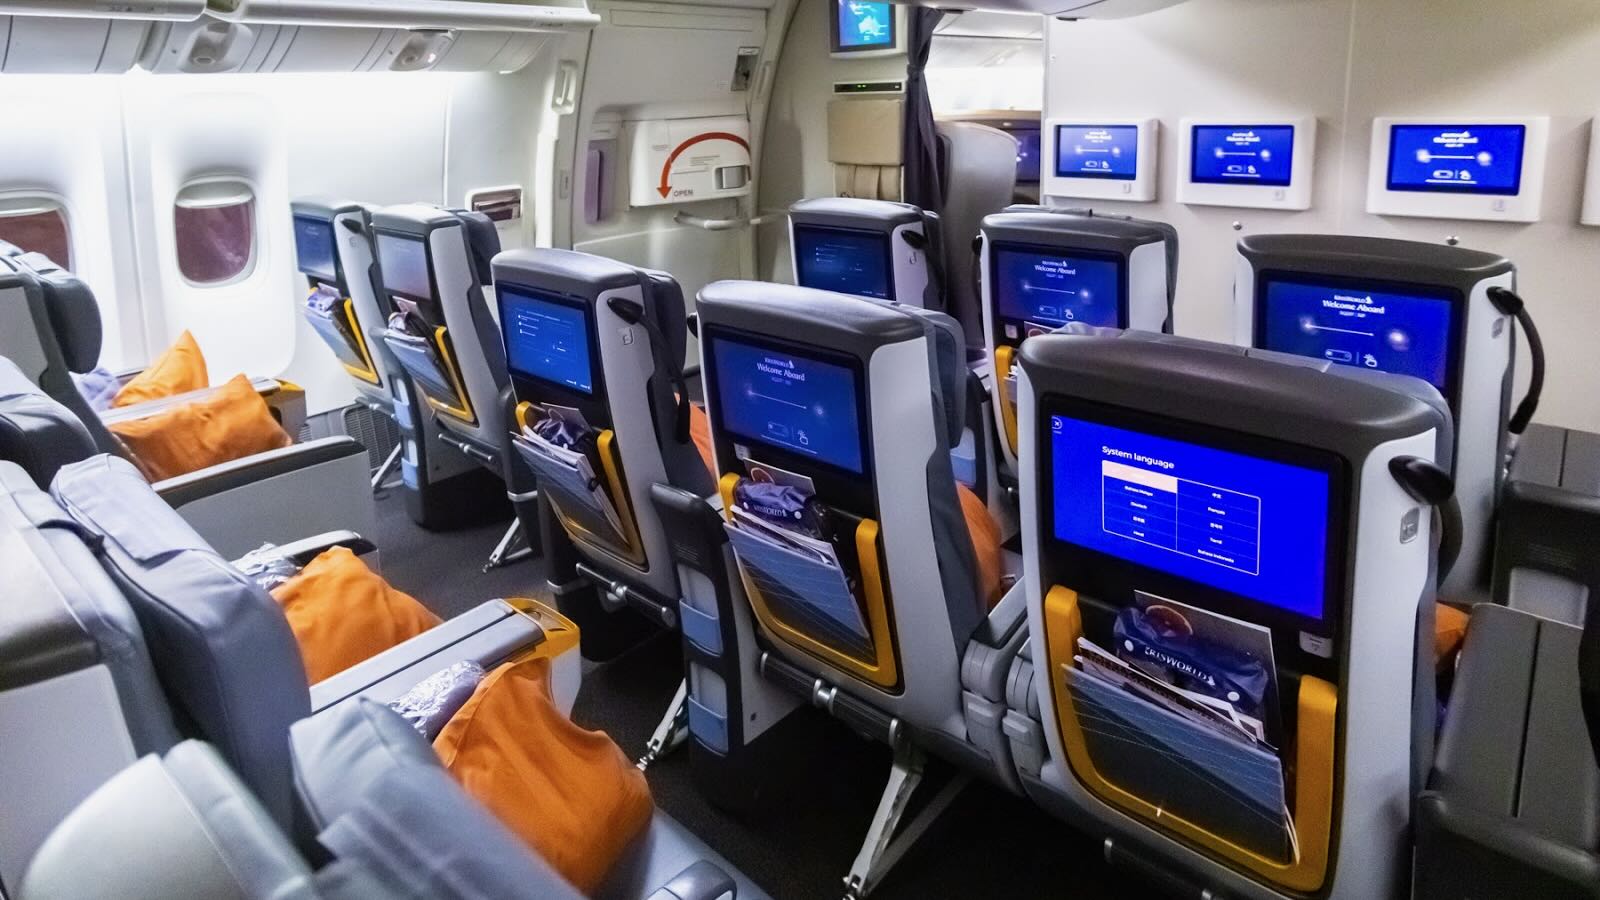 Singapore Airlines Premium Economy layout